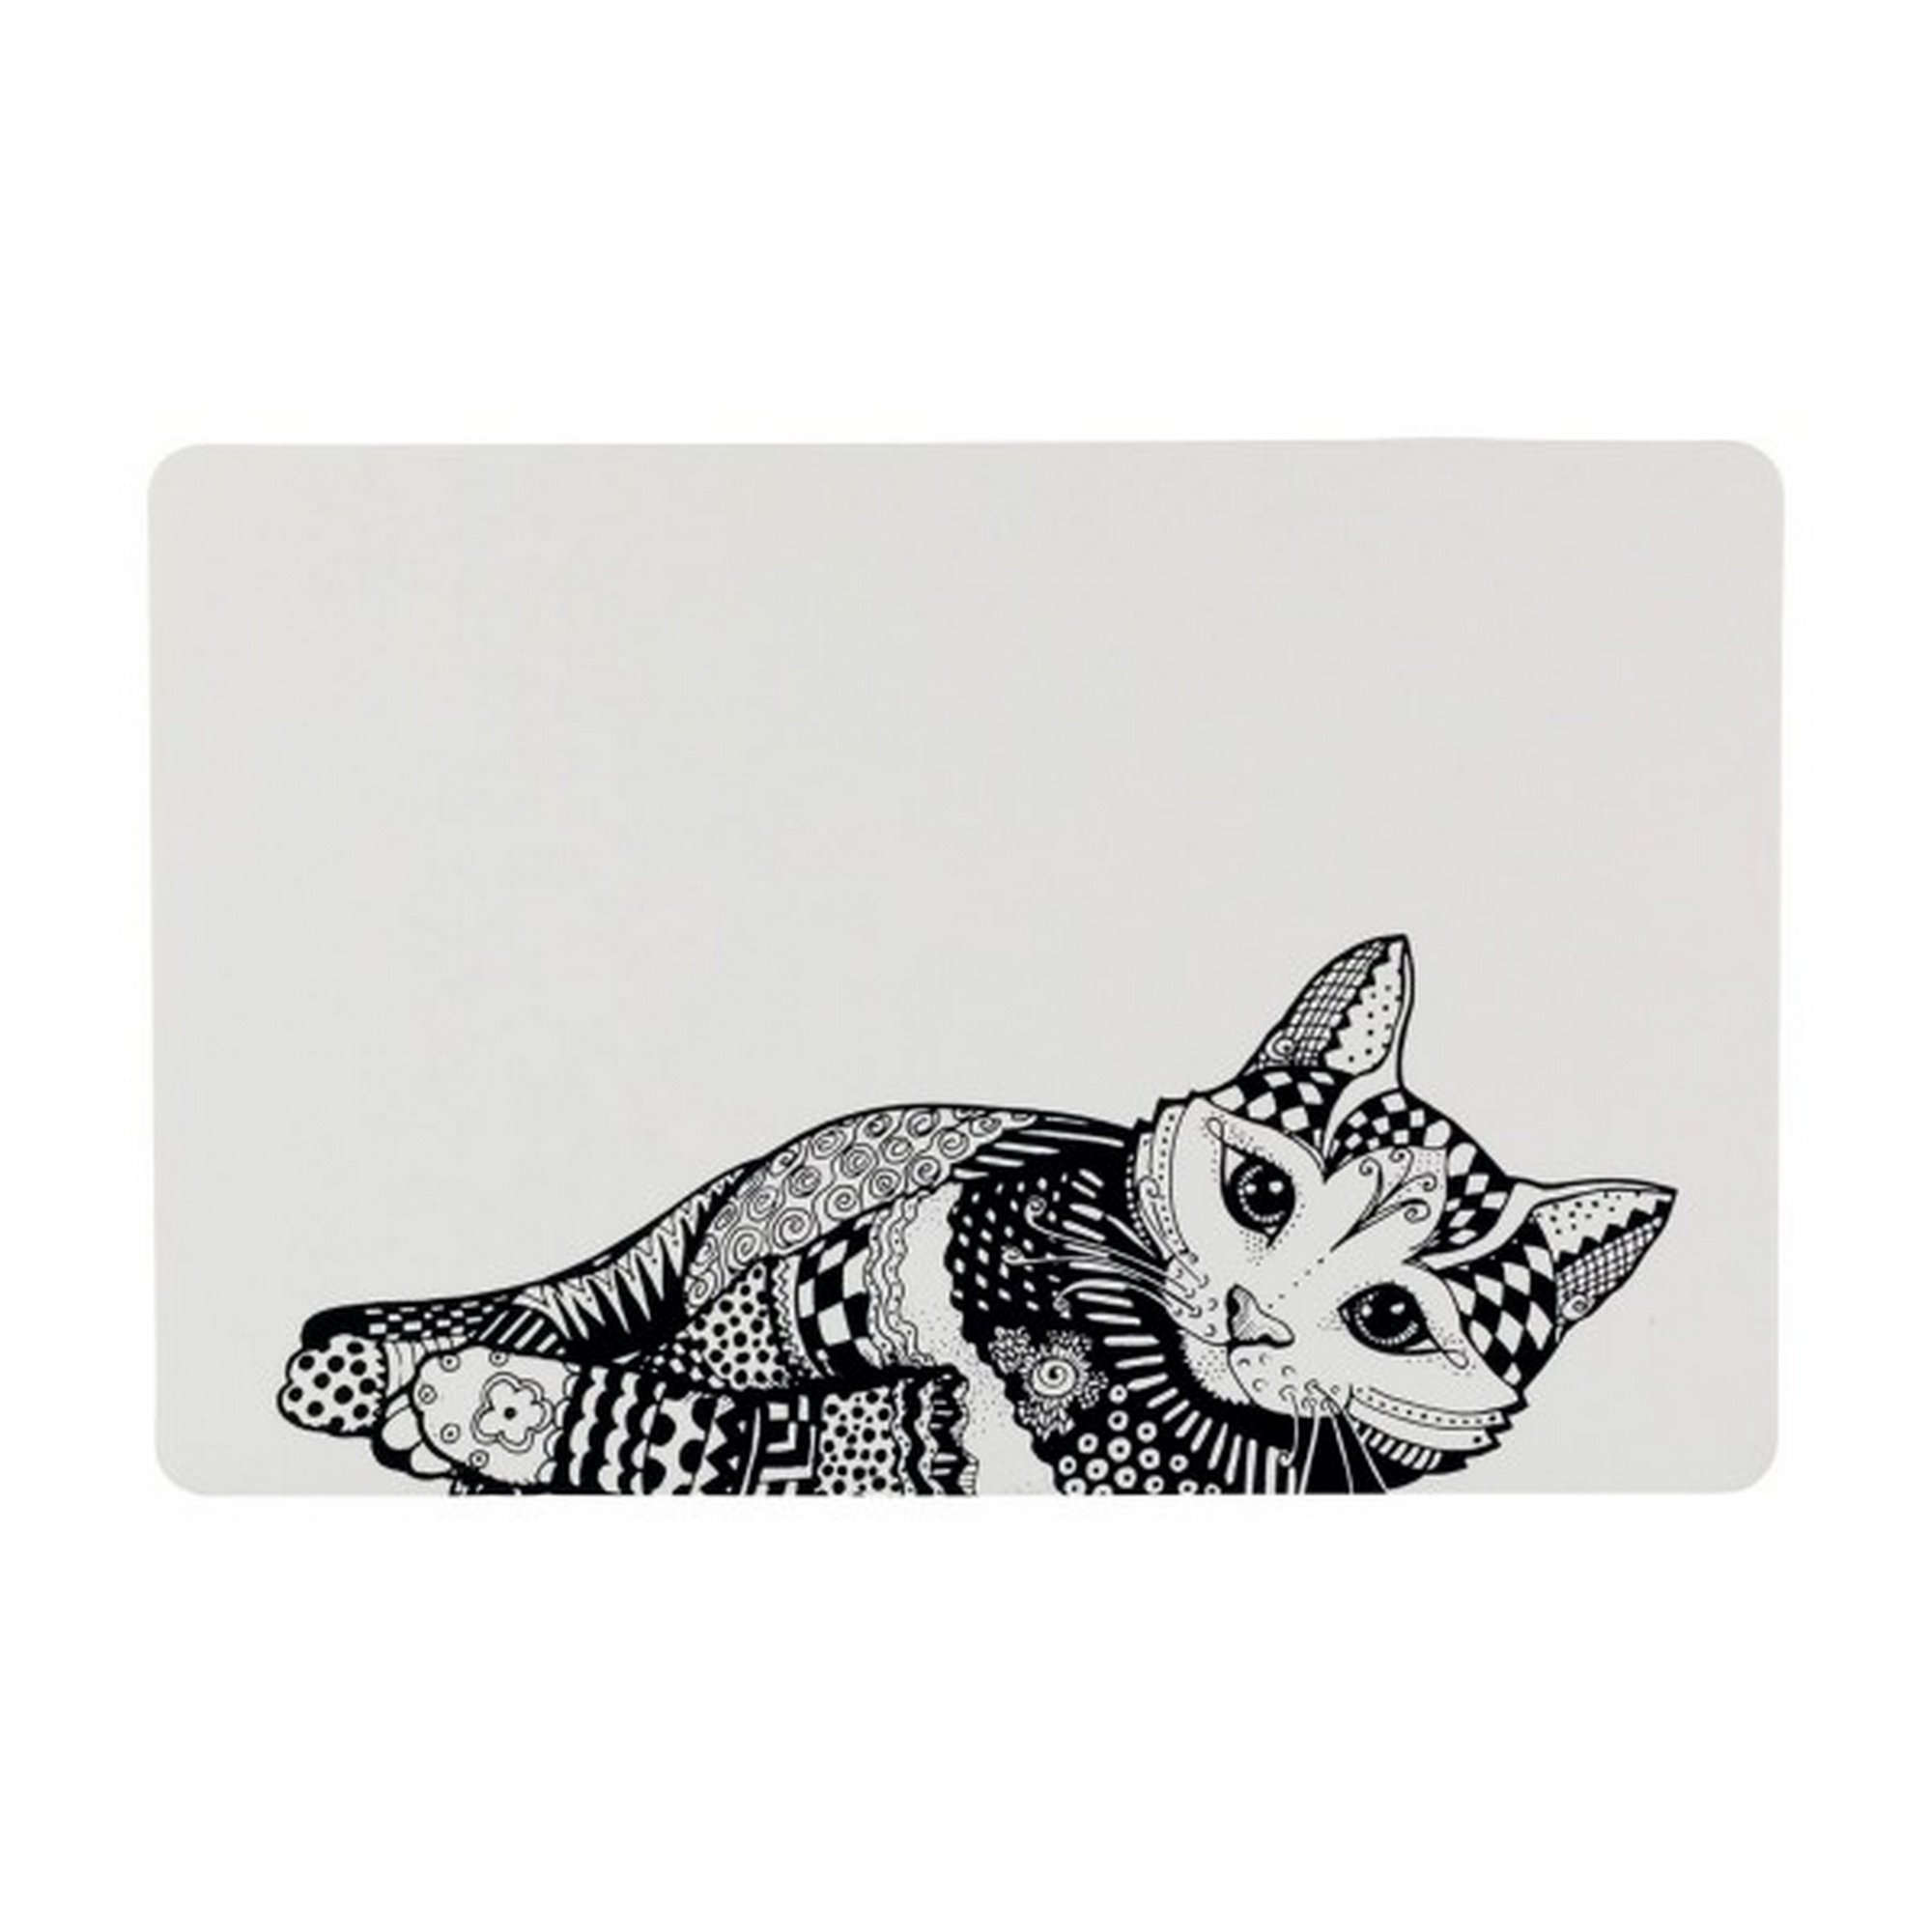 Napfunterlage mit Katzenmotiv weiß/schwarz 44 x 28 cm + product picture